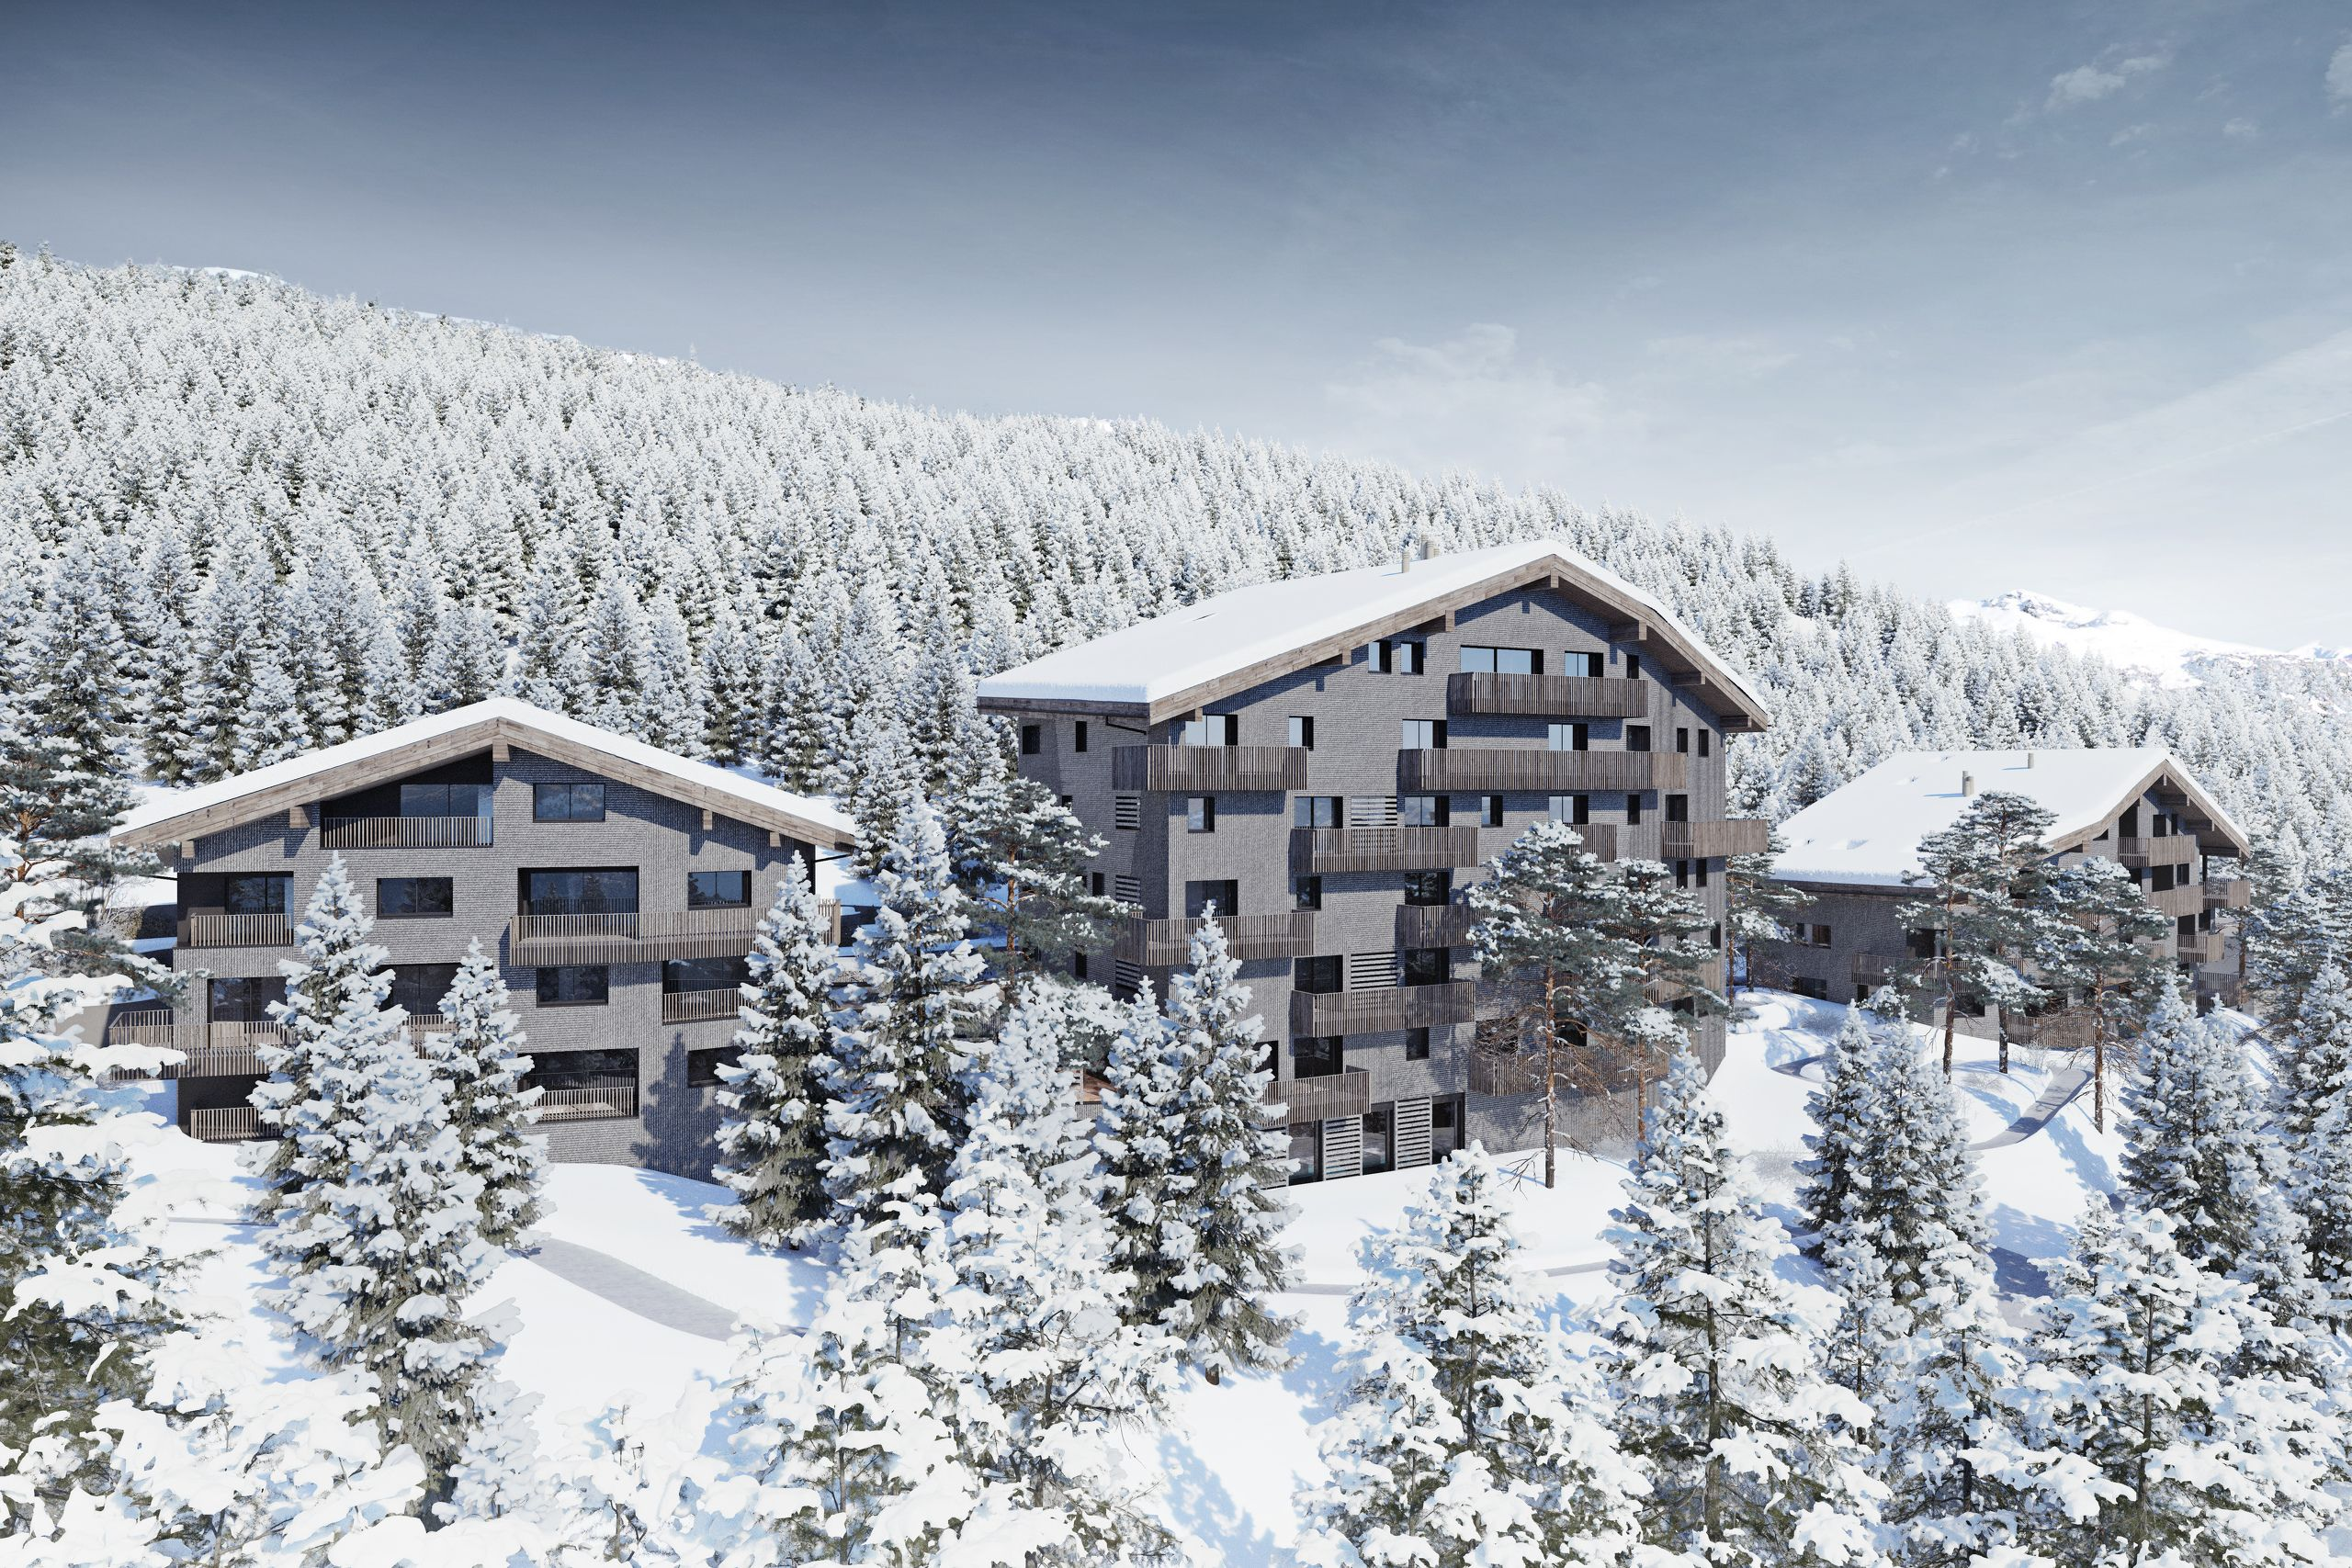 En Valais, la marque de luxe Fendi installe ses nouvelles résidences